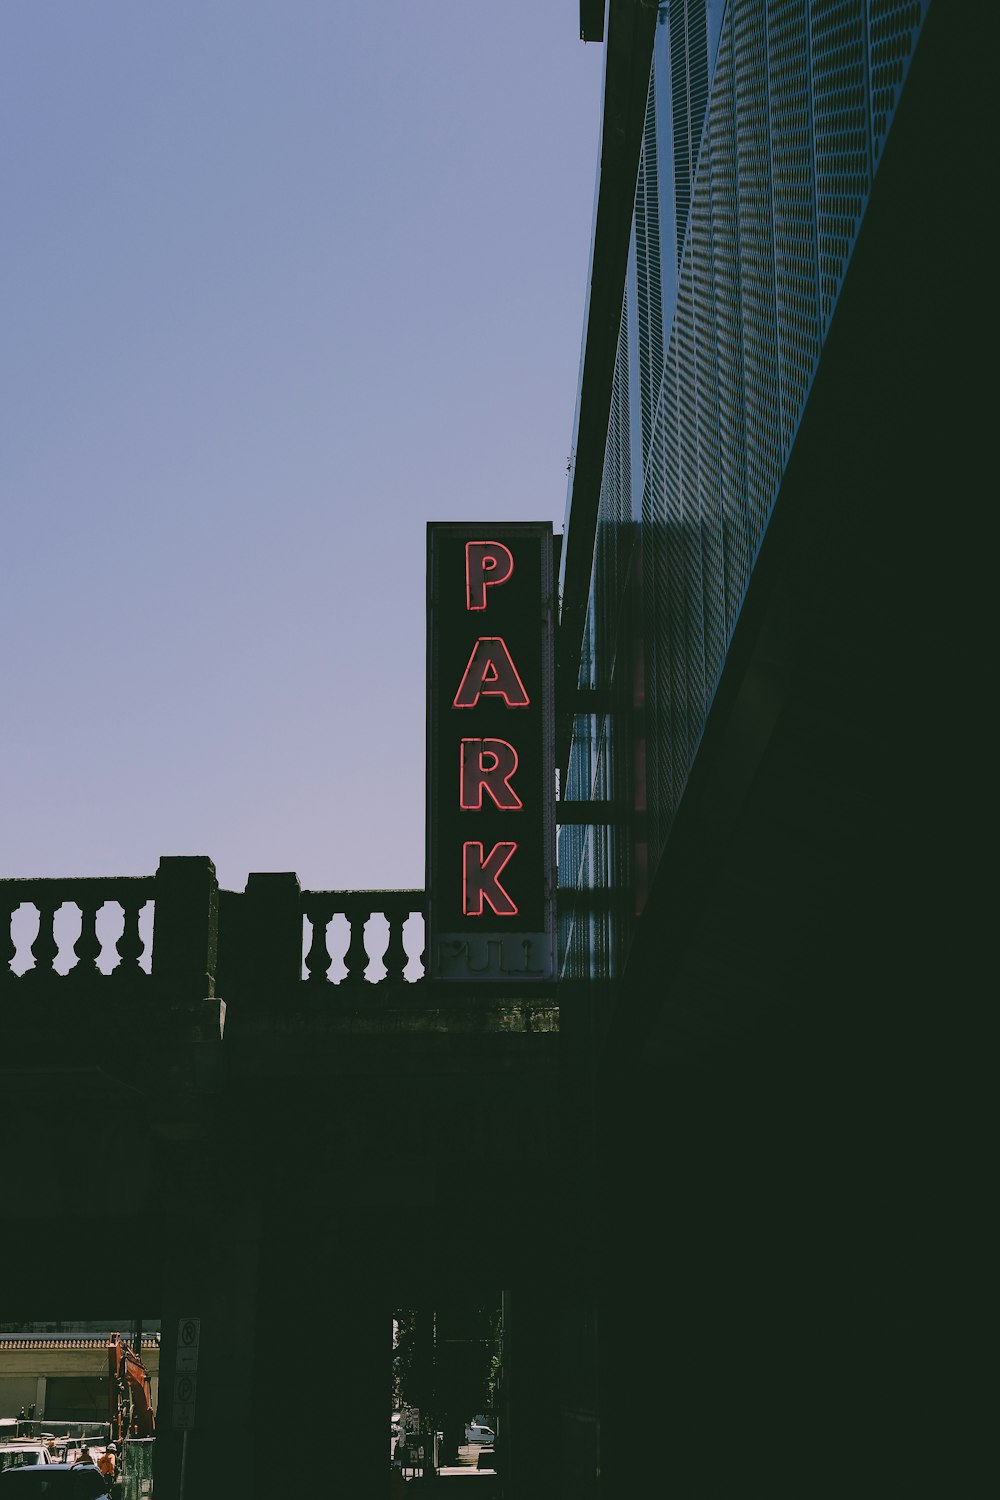 pinke Park-LED-Beschilderung